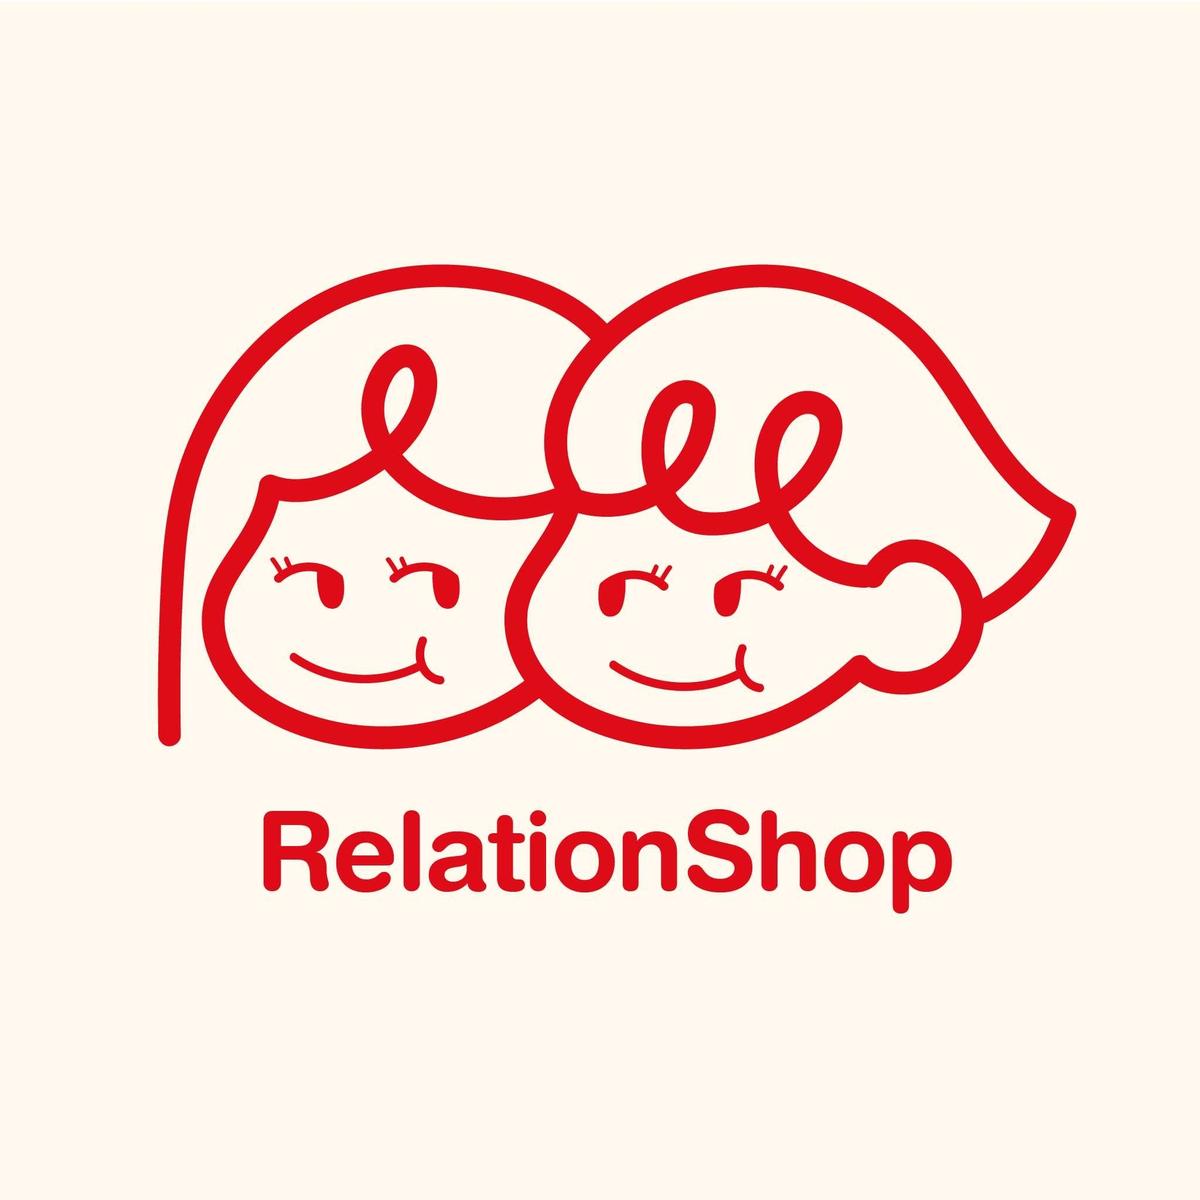 RelationShop